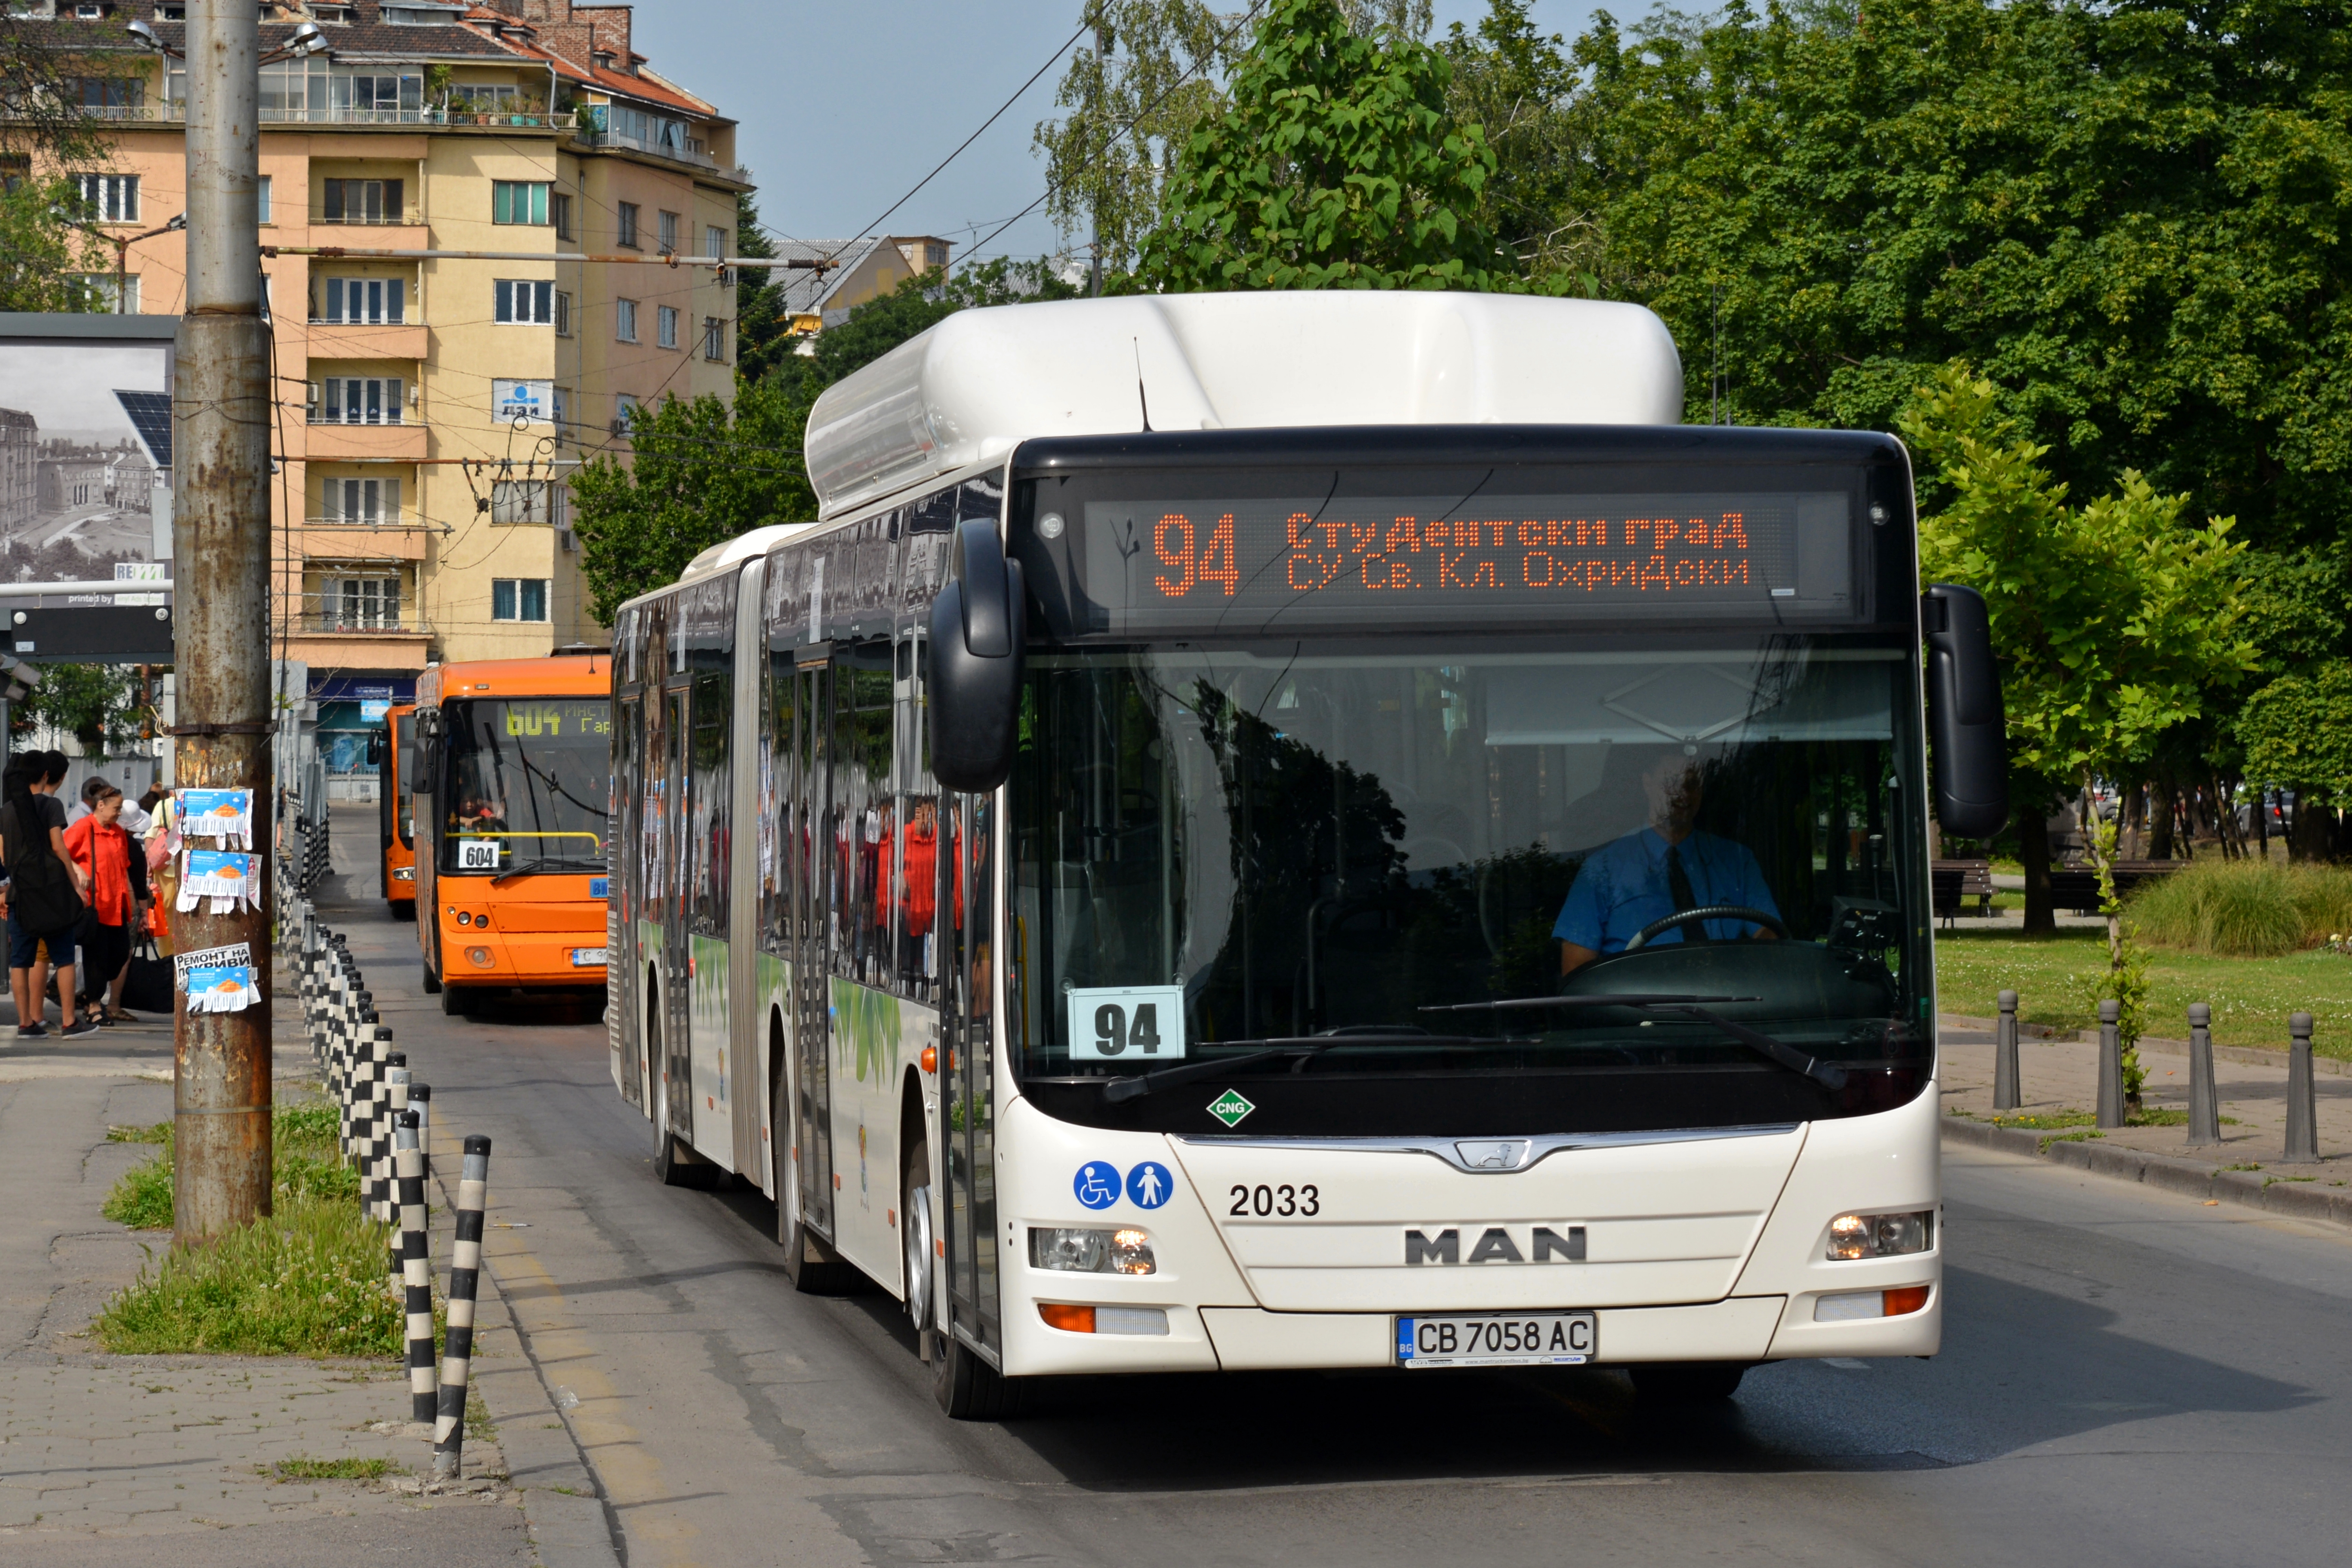 Public buses in Sofia - Wikipedia